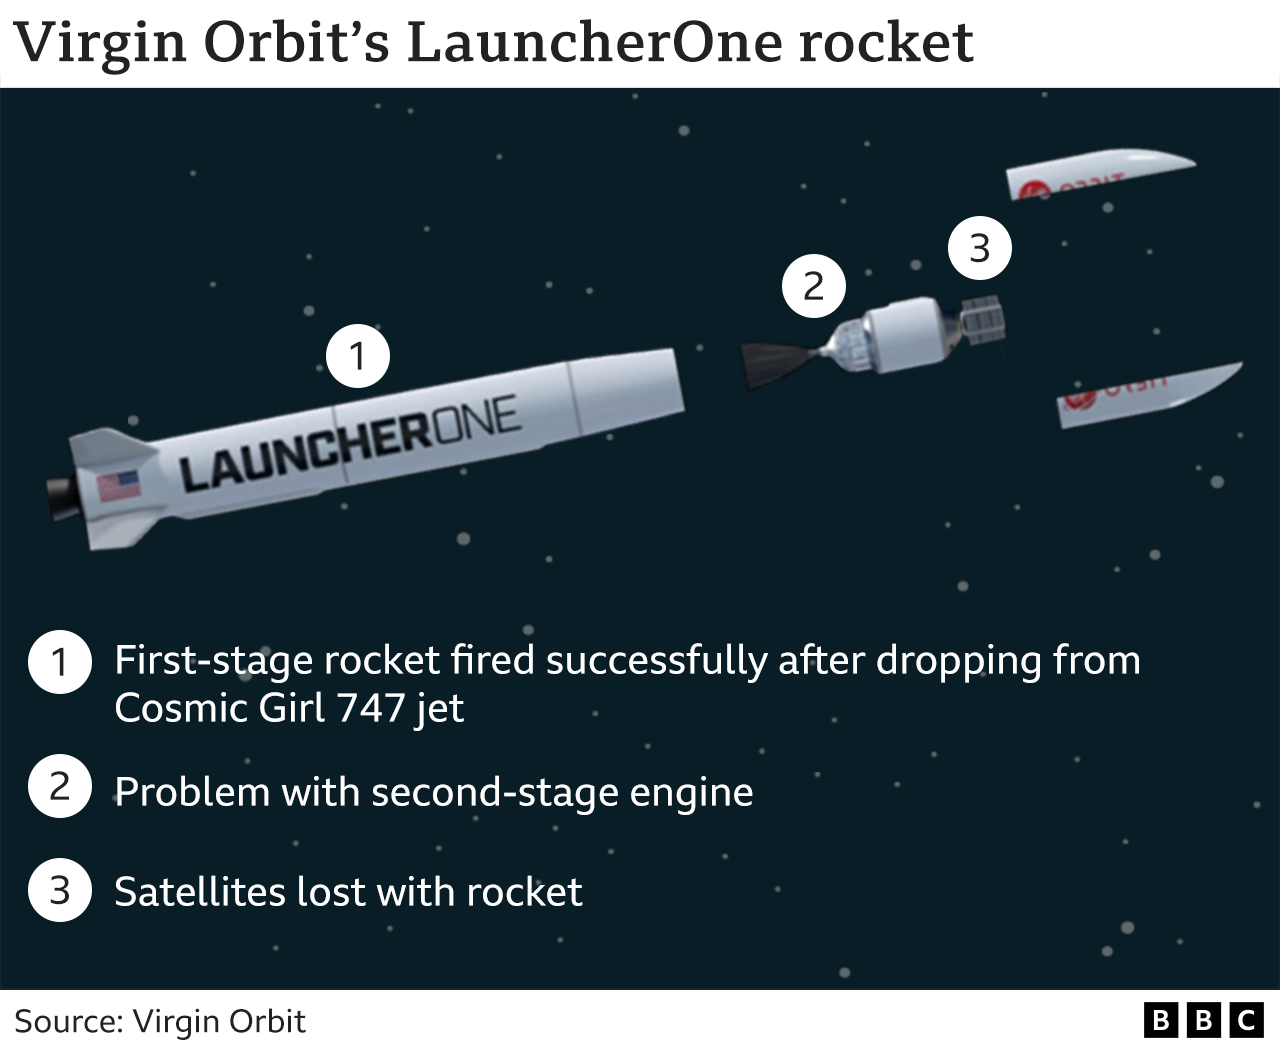 Gráfico que muestra las etapas del cohete. 1. El cohete de la primera etapa se disparó con éxito tras caer del avión Cosmic Girl 747. 2. Problema con el motor de la segunda etapa. 3. Satélites perdidos con el cohete